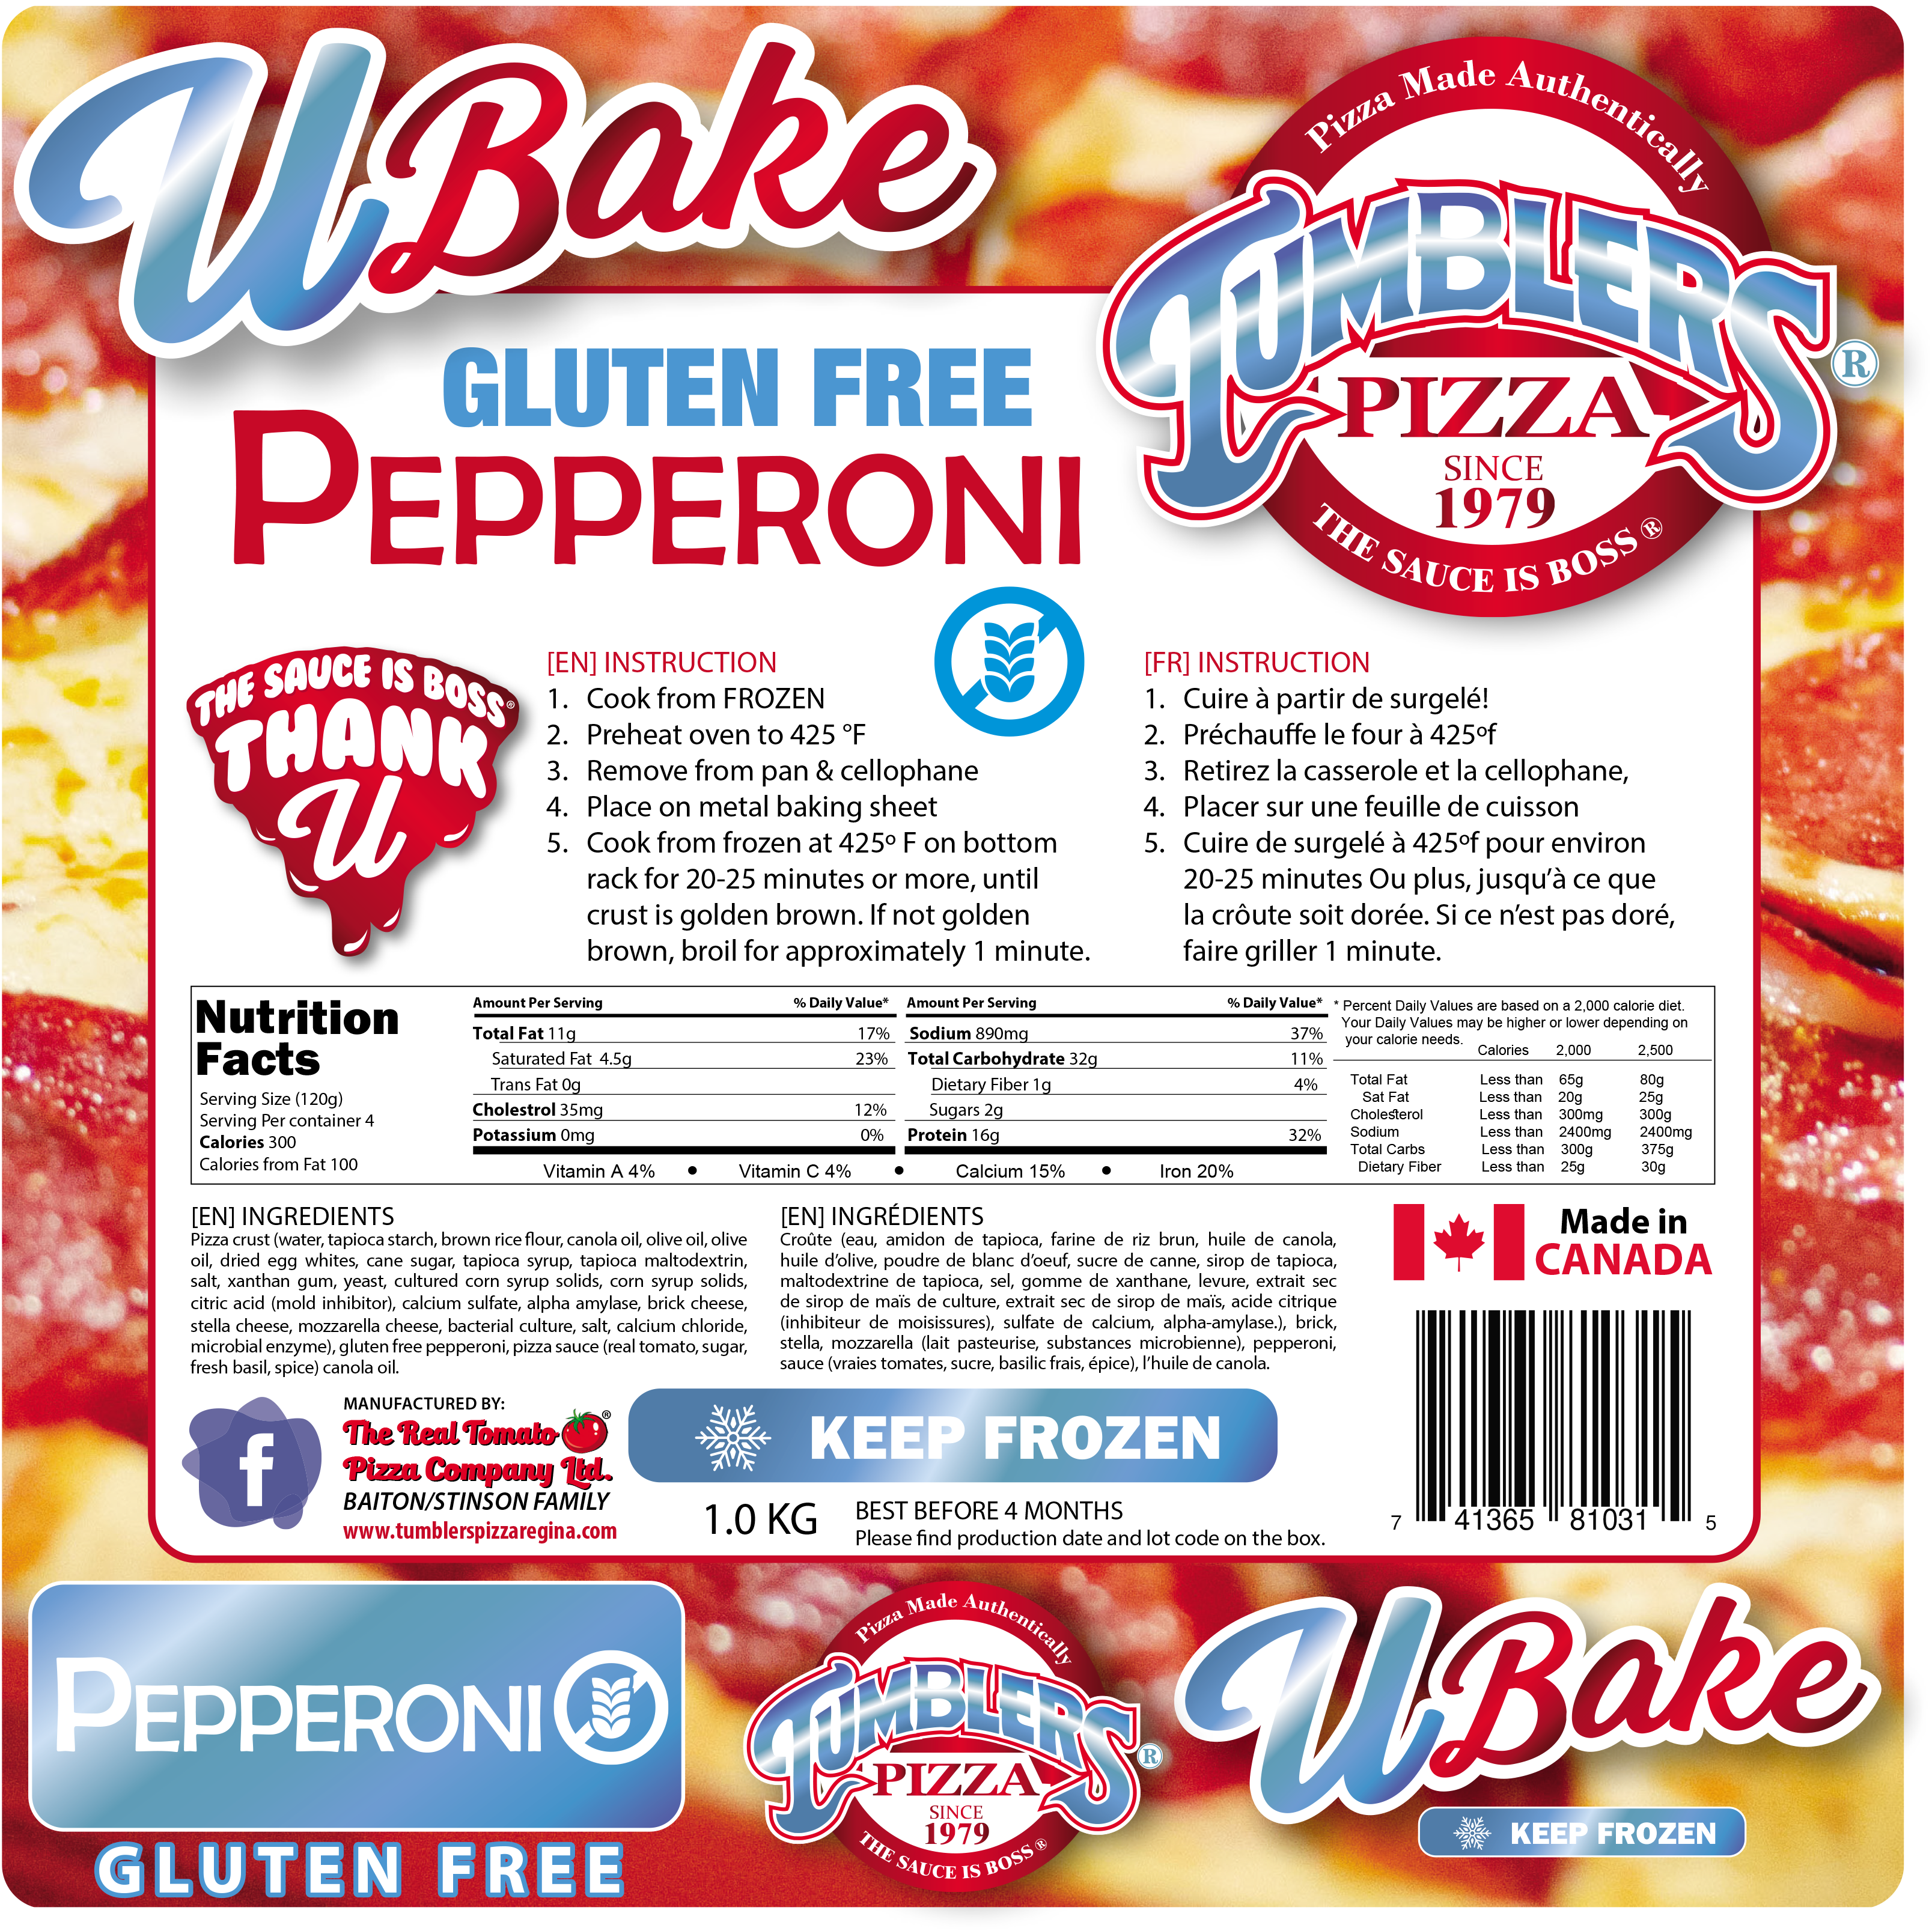 Gluten Free Pepperoni frozen Tumblers ubake Pizza regina